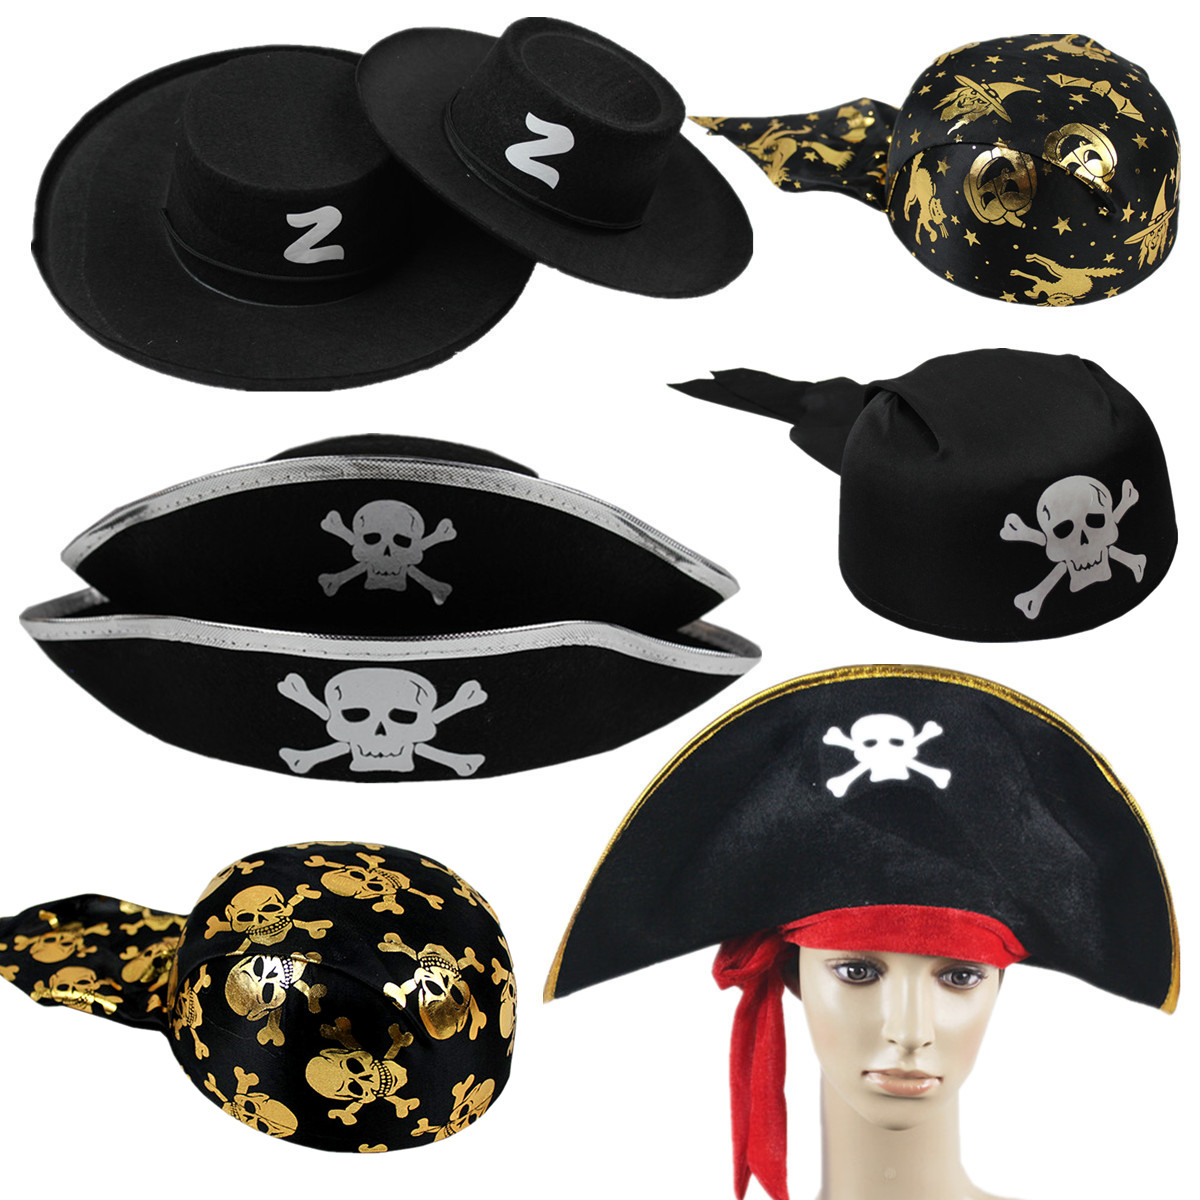 1万圣节道具头饰派对佐罗加勒比海盗服装帽子船长帽南瓜海盗帽